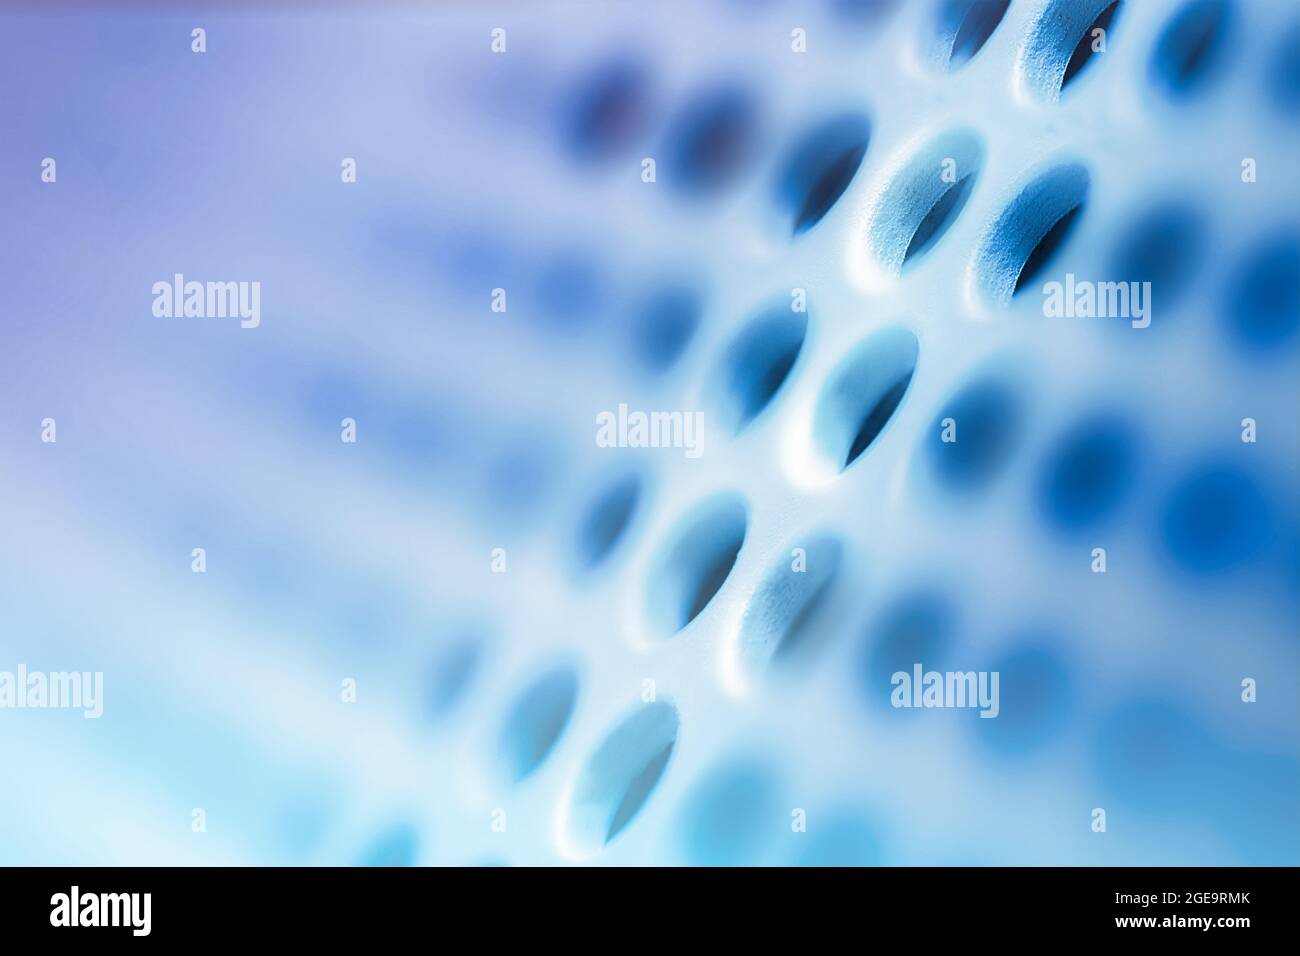 Abstrakter blauer Hintergrund zum Thema moderne Technologie, Kommunikation, Internet. Makrofotografie. Stockfoto